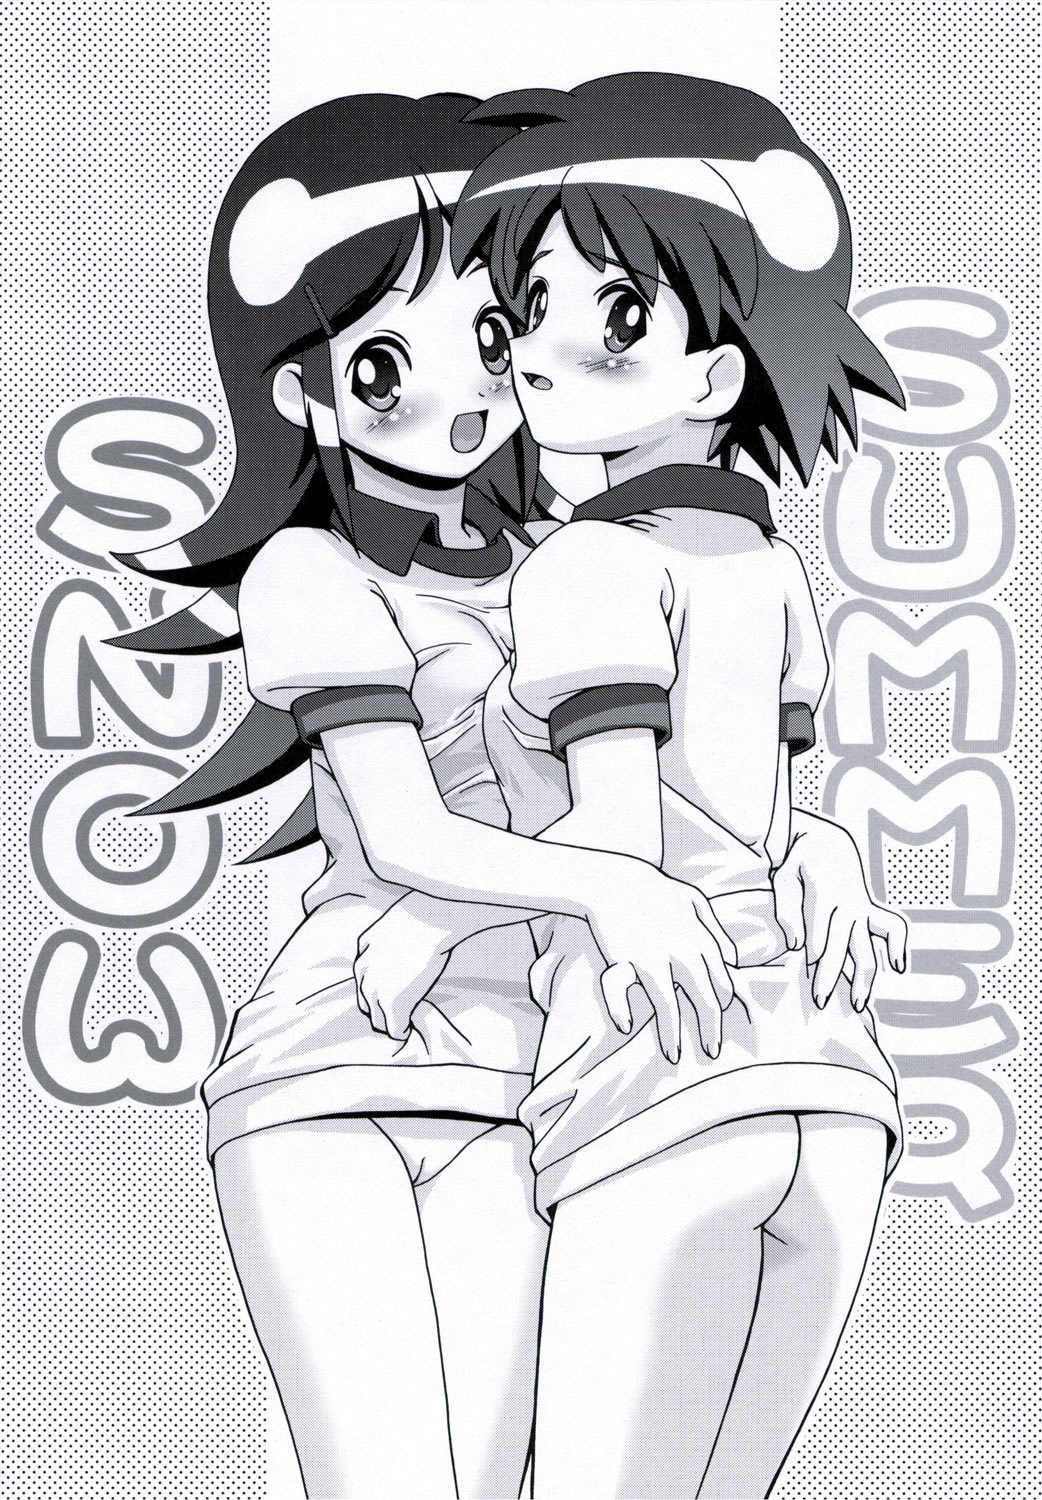 (SC31) [Gambler Club (Kousaka Jun)] Natsu Yuki - Summer Snow (Keroro Gunsou) page 3 full